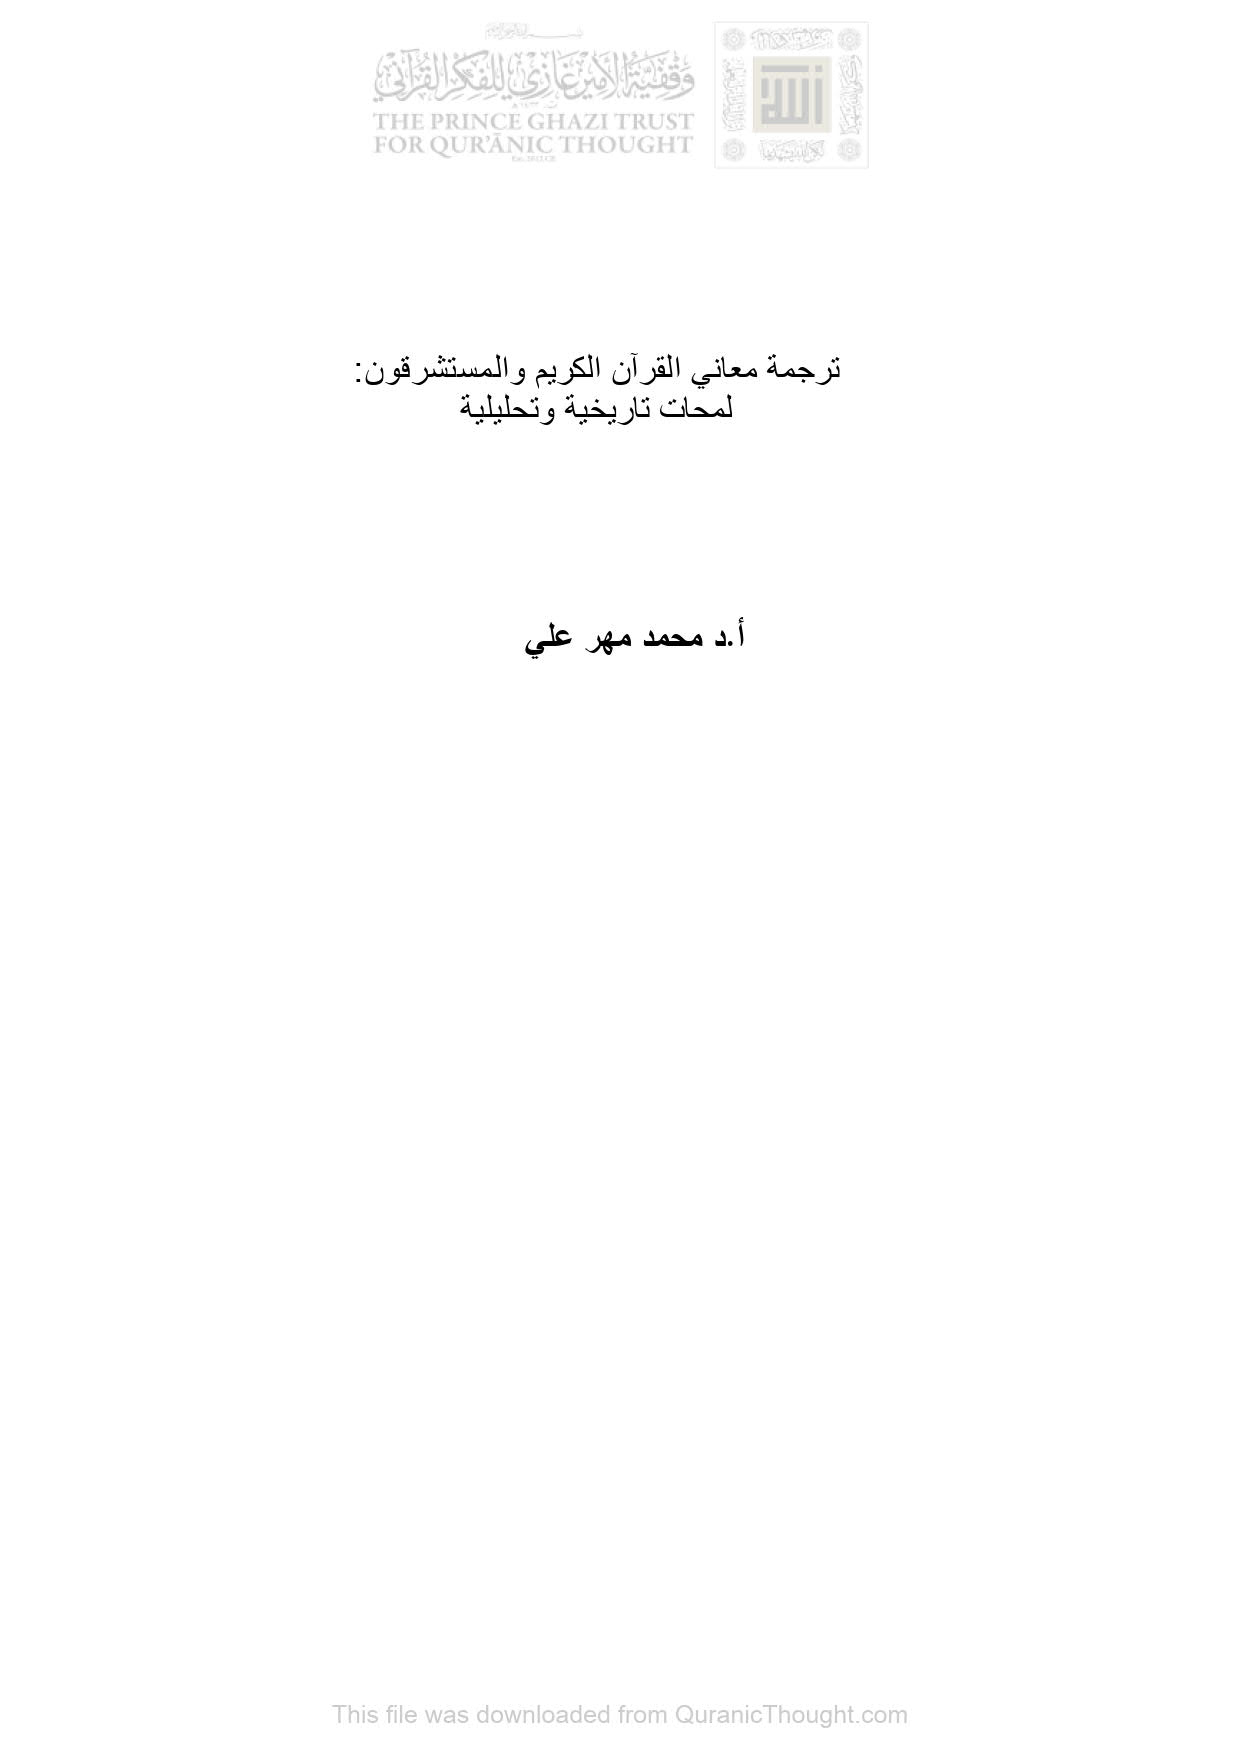 ترجمة معاني القرآن الكريم والمستشرقون : لمحات تاريخية وتحليلية